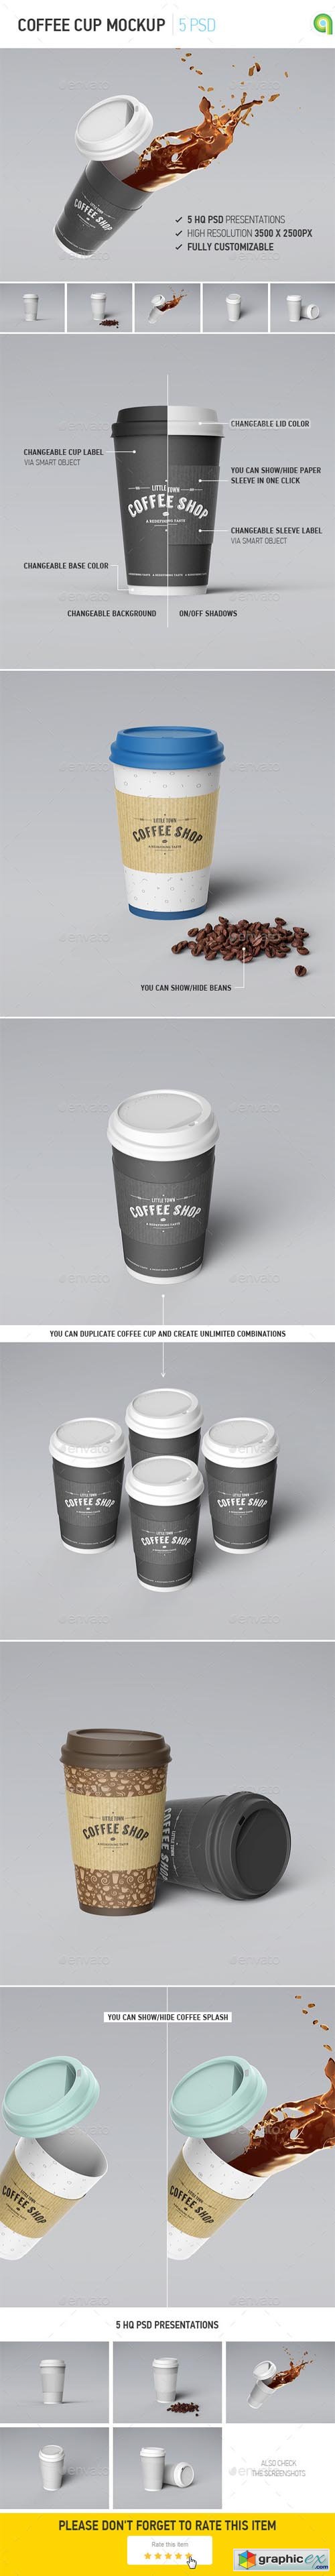 Coffee Cup Mockup 